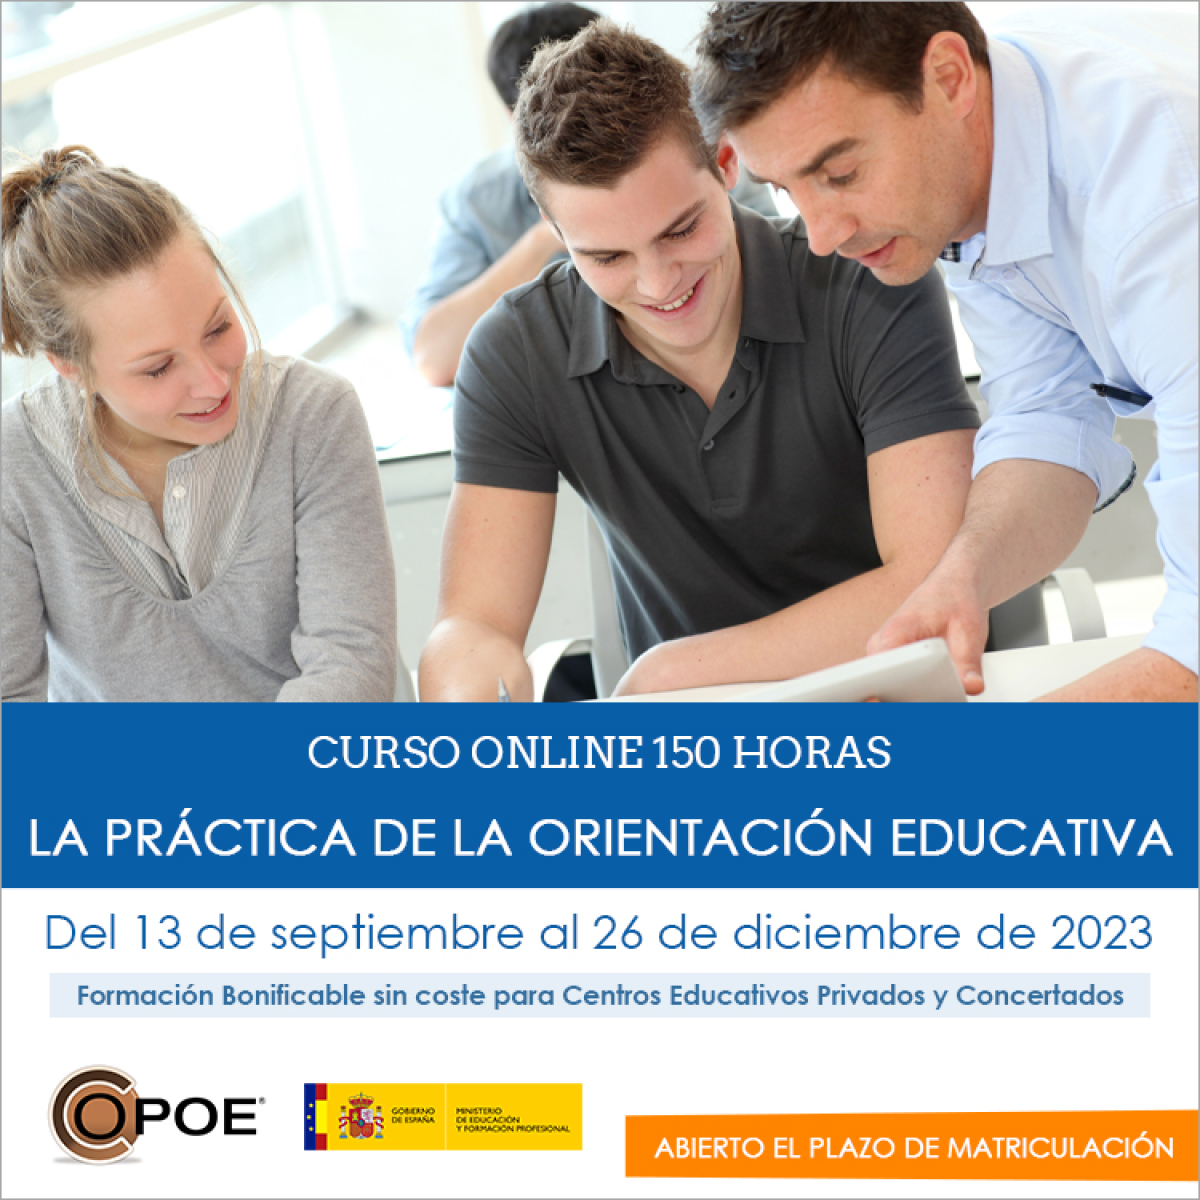 Curso online de COPOE &quot;La práctica de la Orientación educativa”, del 14 de septiembre al 26 de diciembre de 2022